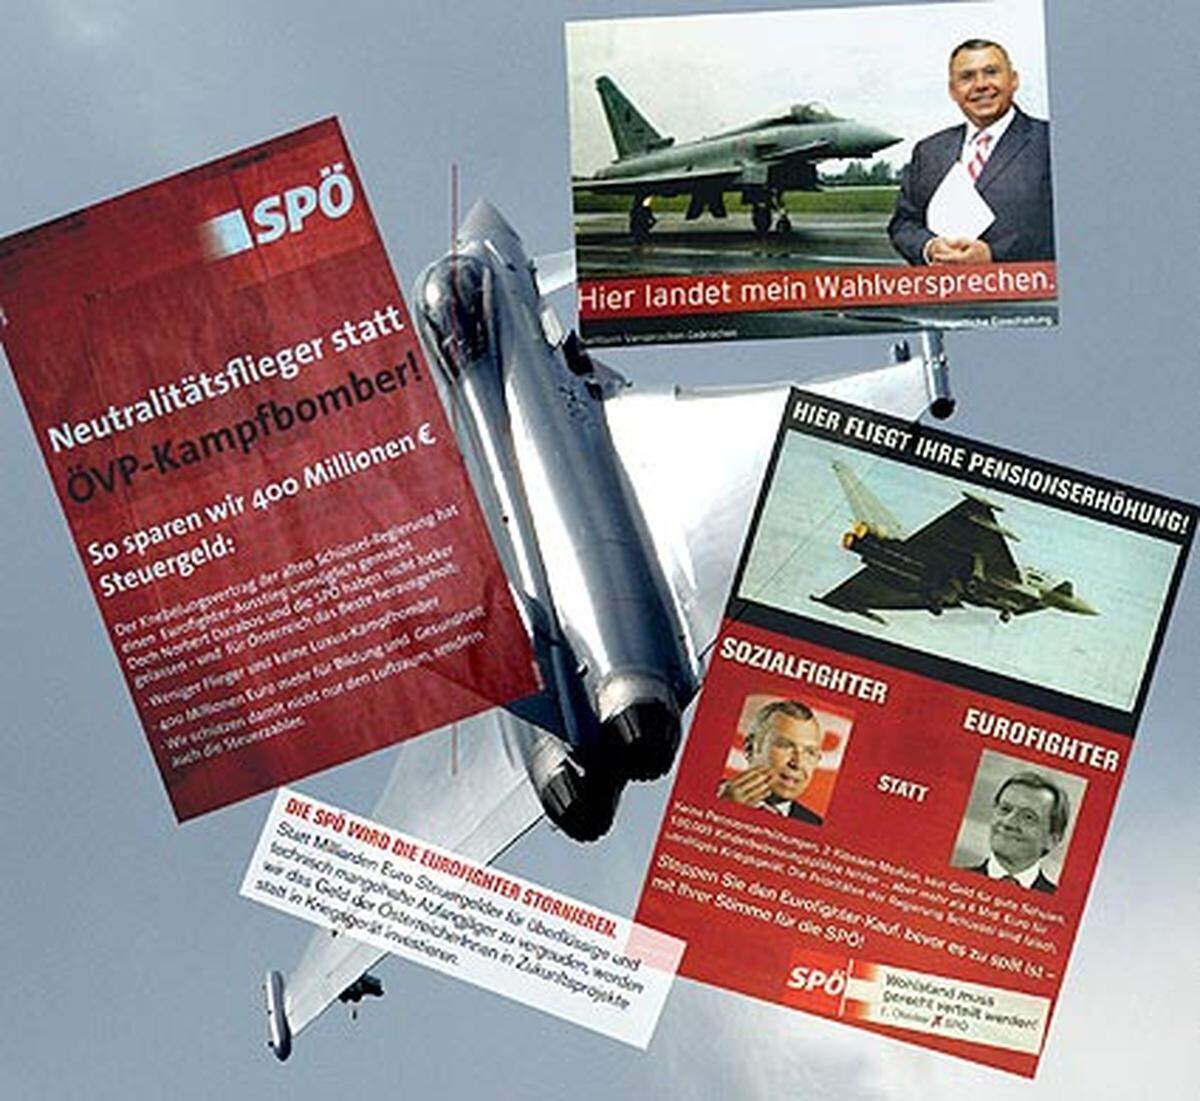 Im Wahlkampf hatte sie unter dem Motto "Keine Eurofighter unter Kanzler Gusenbauer" den Ausstieg versprochen.